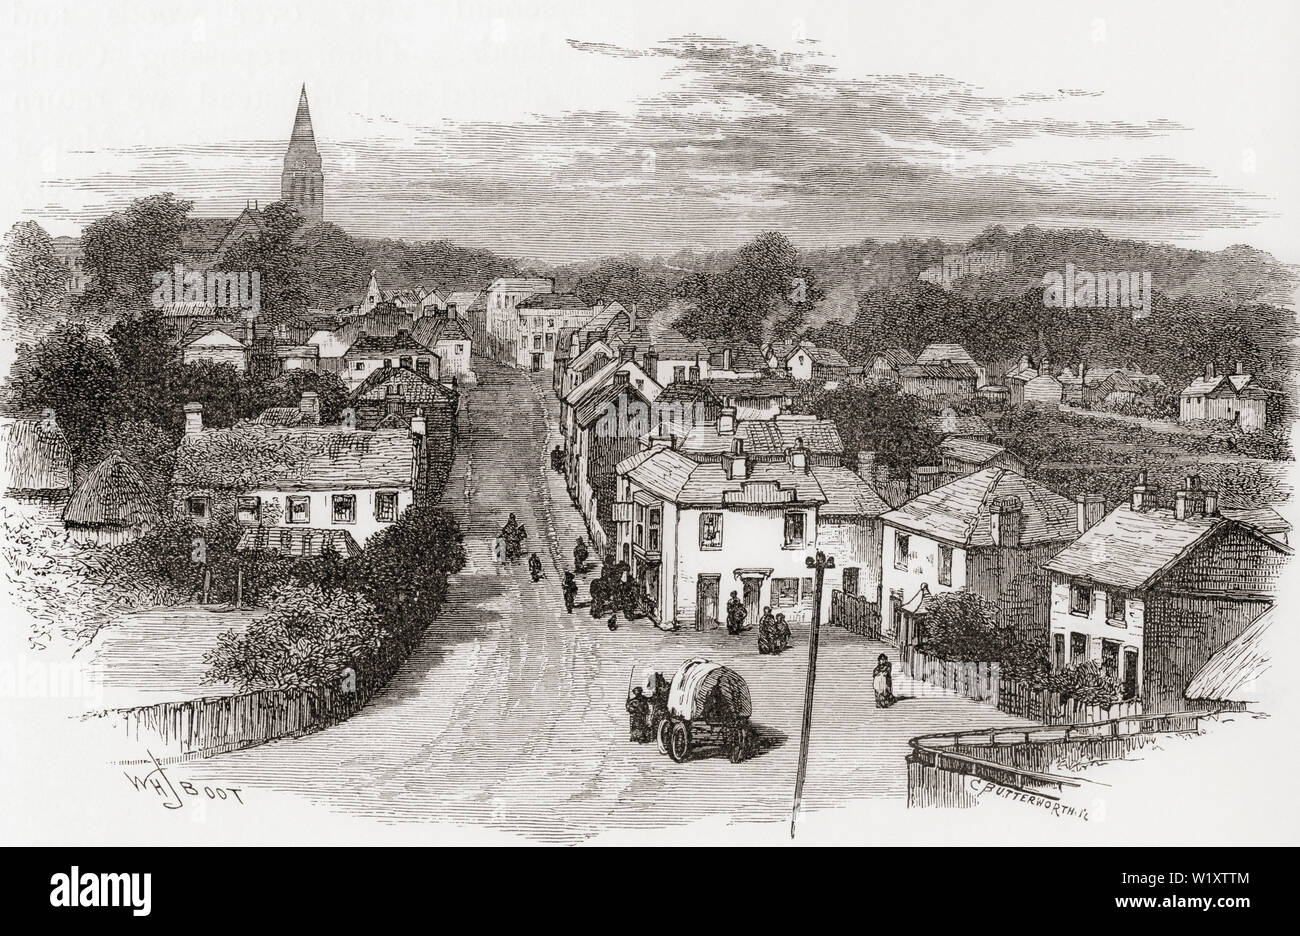 Das Dorf Lyndhurst, Hampshire, England, hier im 19. Jahrhundert. Aus dem Englischen Bilder, veröffentlicht 1890. Stockfoto